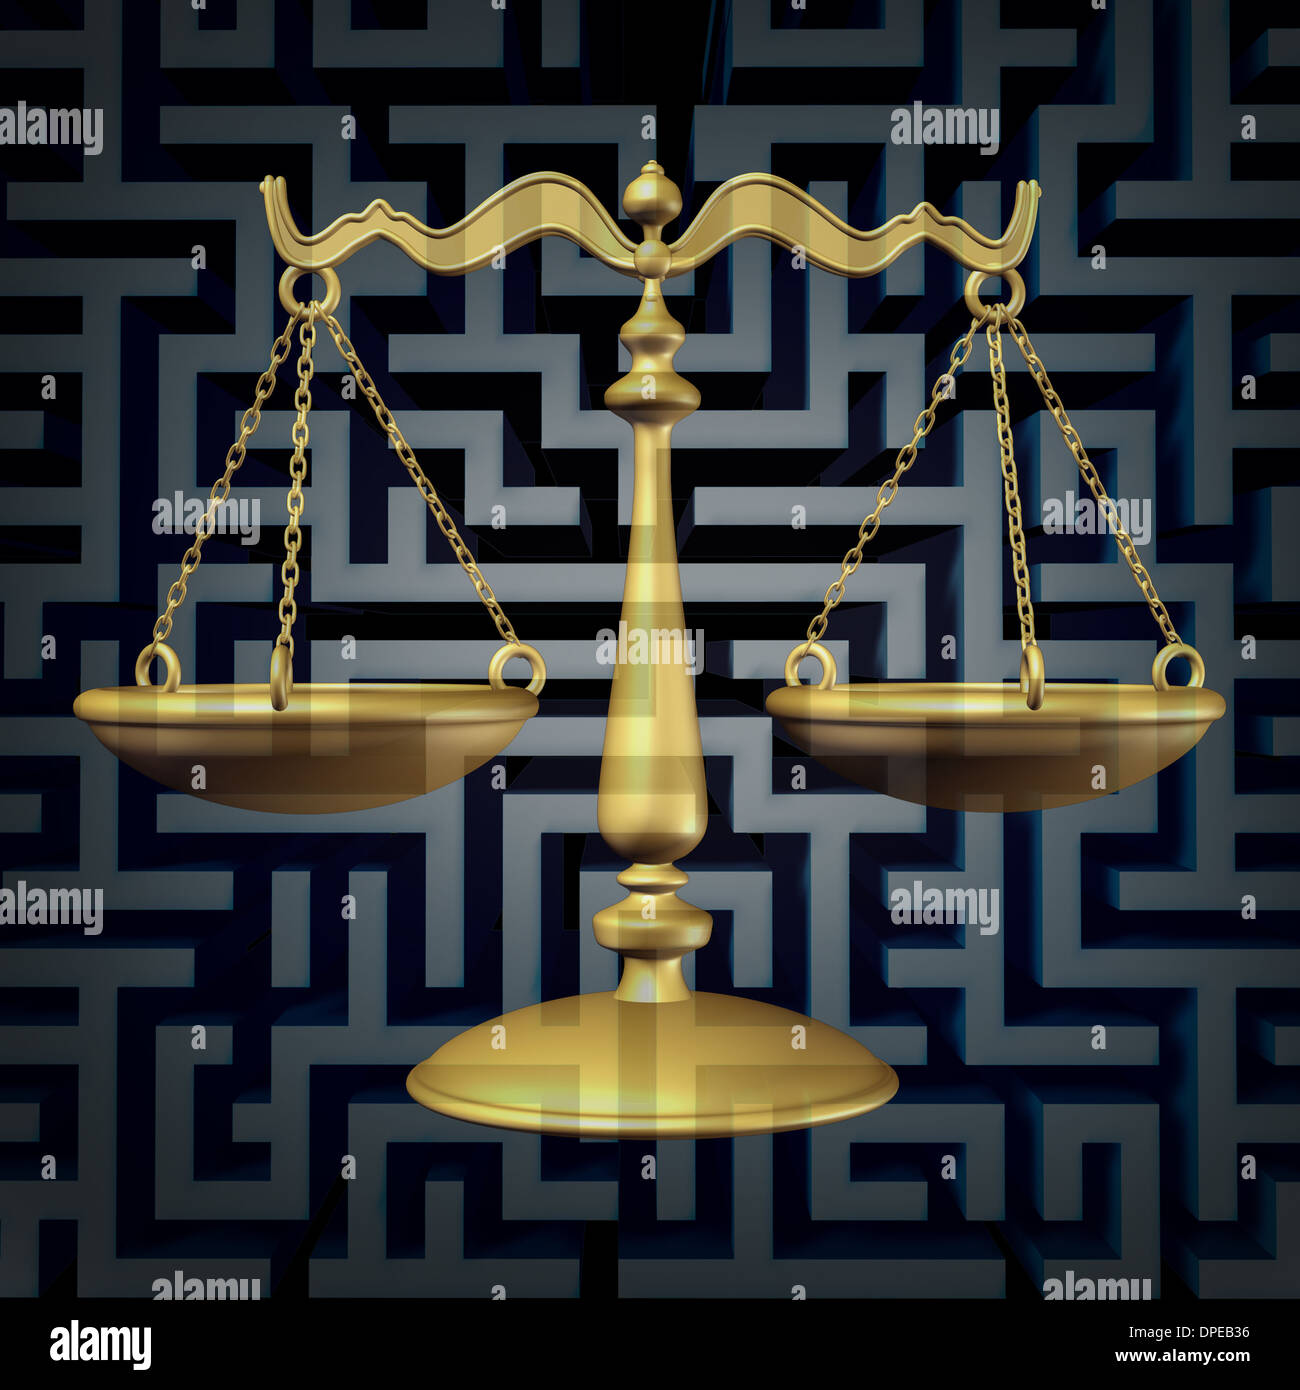 Verwirrung und Rechtsanwalt Rechtsberatung als ein Geschäftskonzept Gesetz mit einer Justiz-Skala auf einem drei dimensionalen Irrgarten oder Labyrinth als Metapher für die komplizierten Vorschriften und Bürokratie. Stockfoto